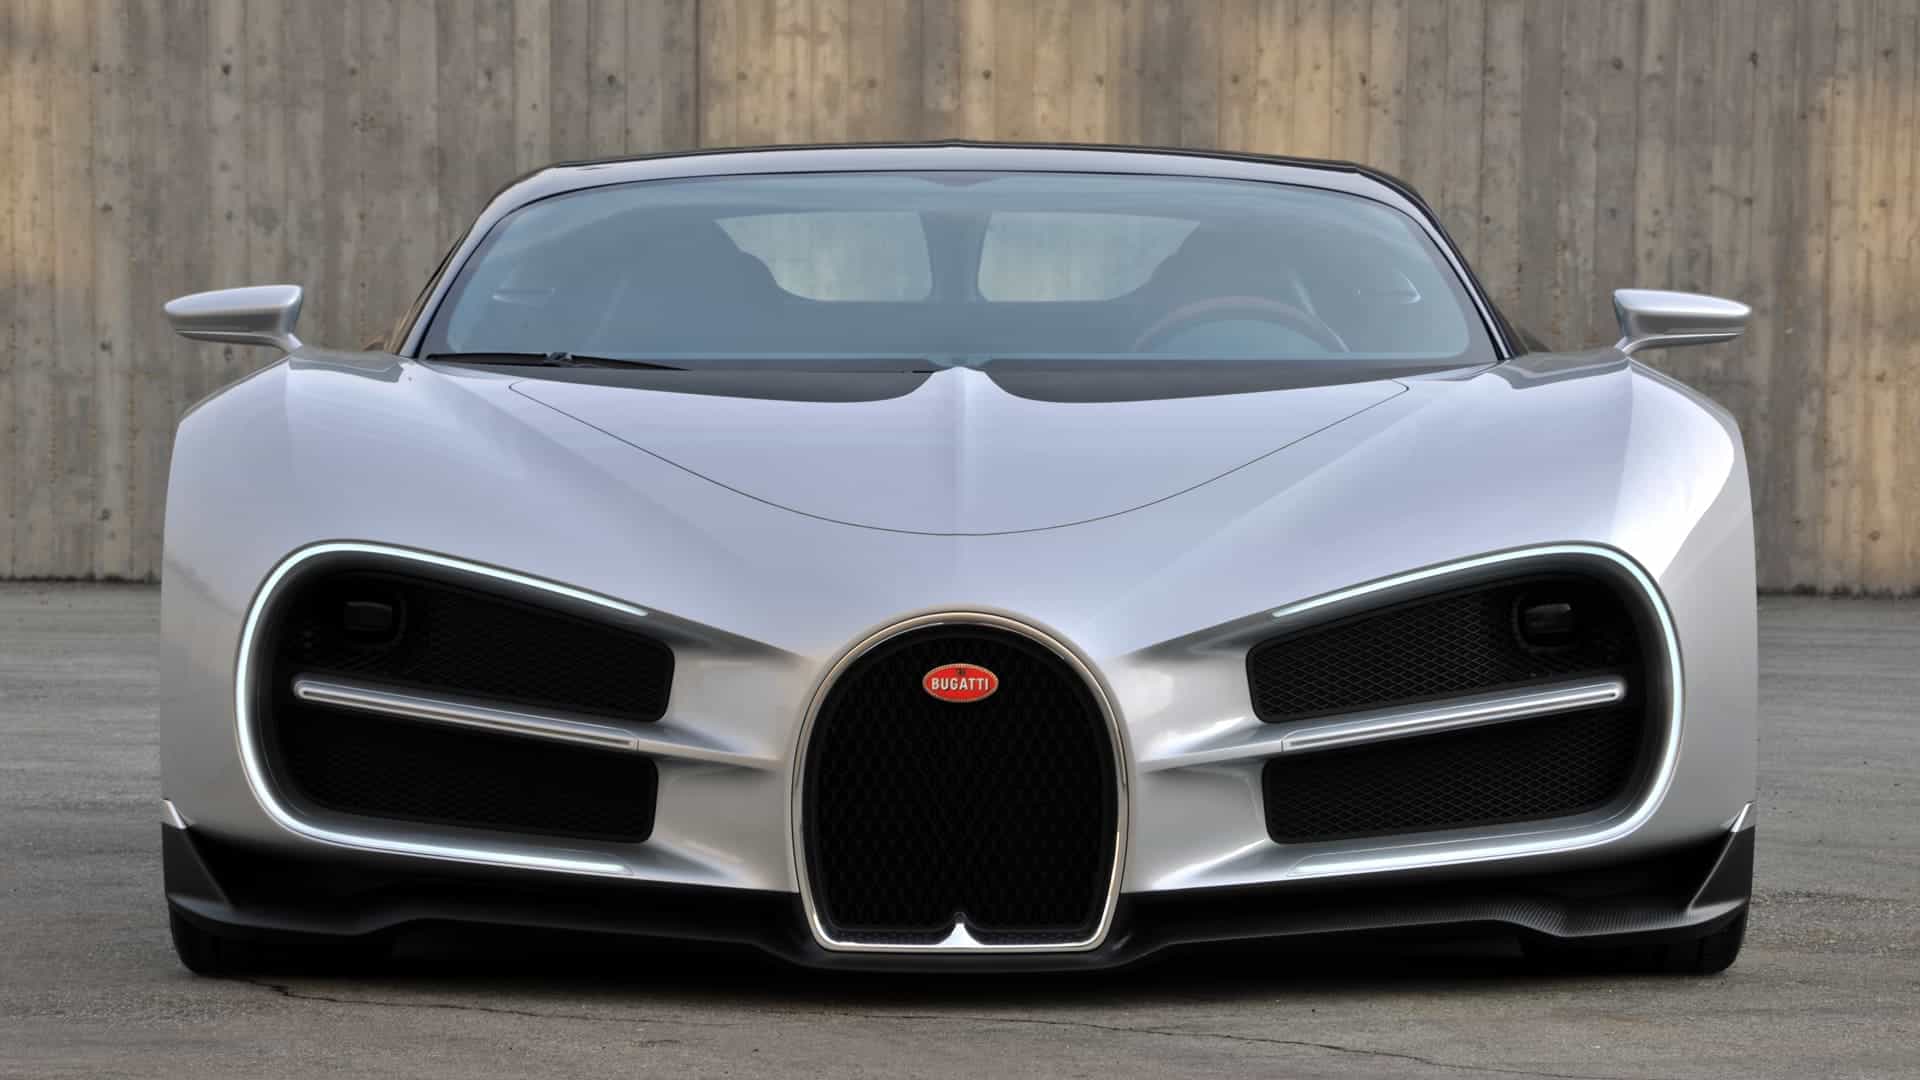 El fascinante proceso que debes realizar para comprar el súper coche Bugatti Chiron de $3 millones